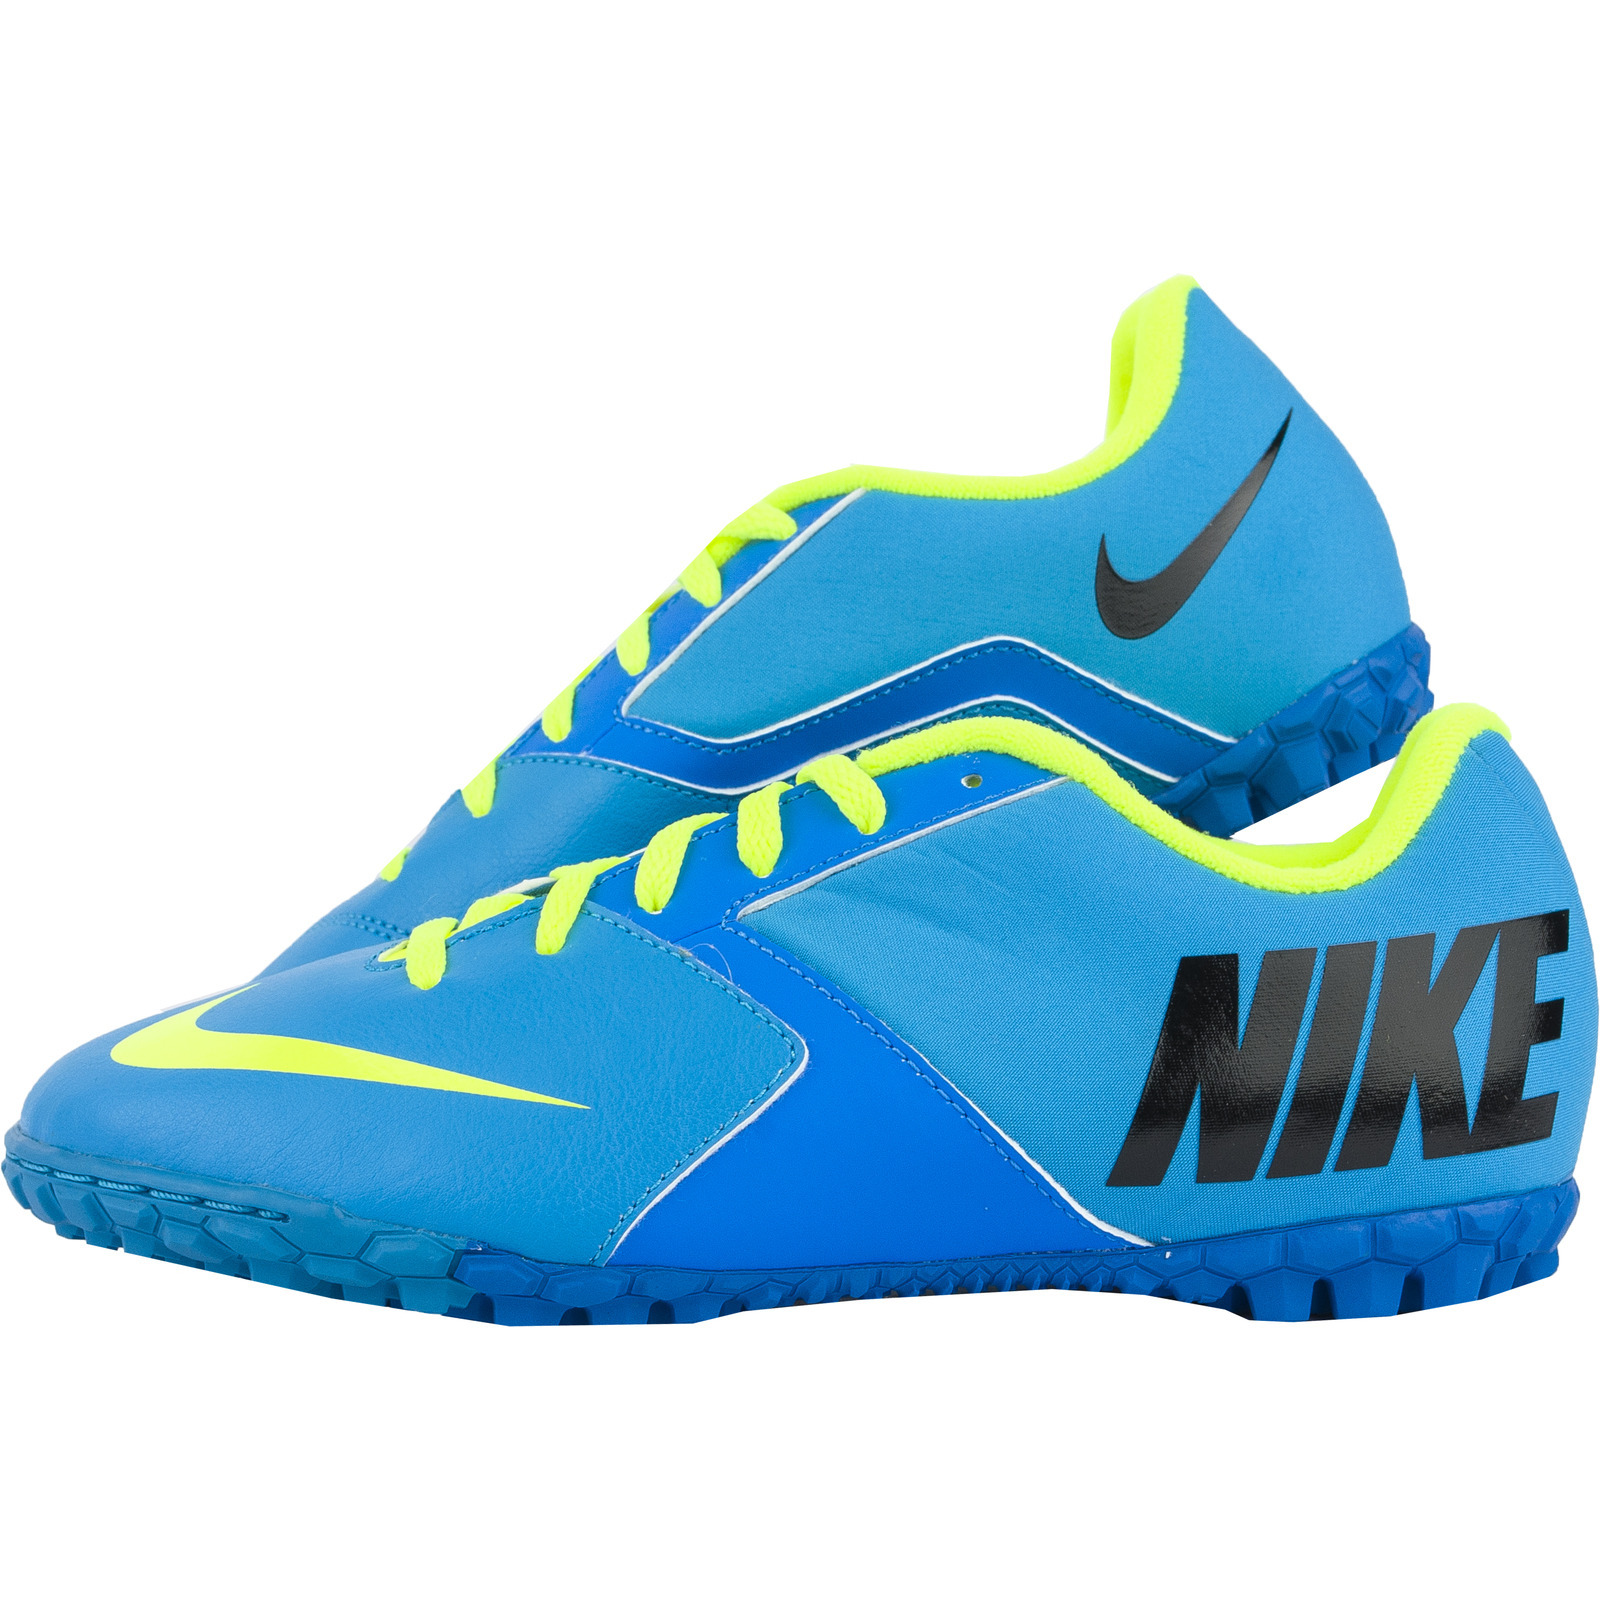 Towing die Bulk Pantofi sport, Adidasi barbati Nike Bomba II 580444474